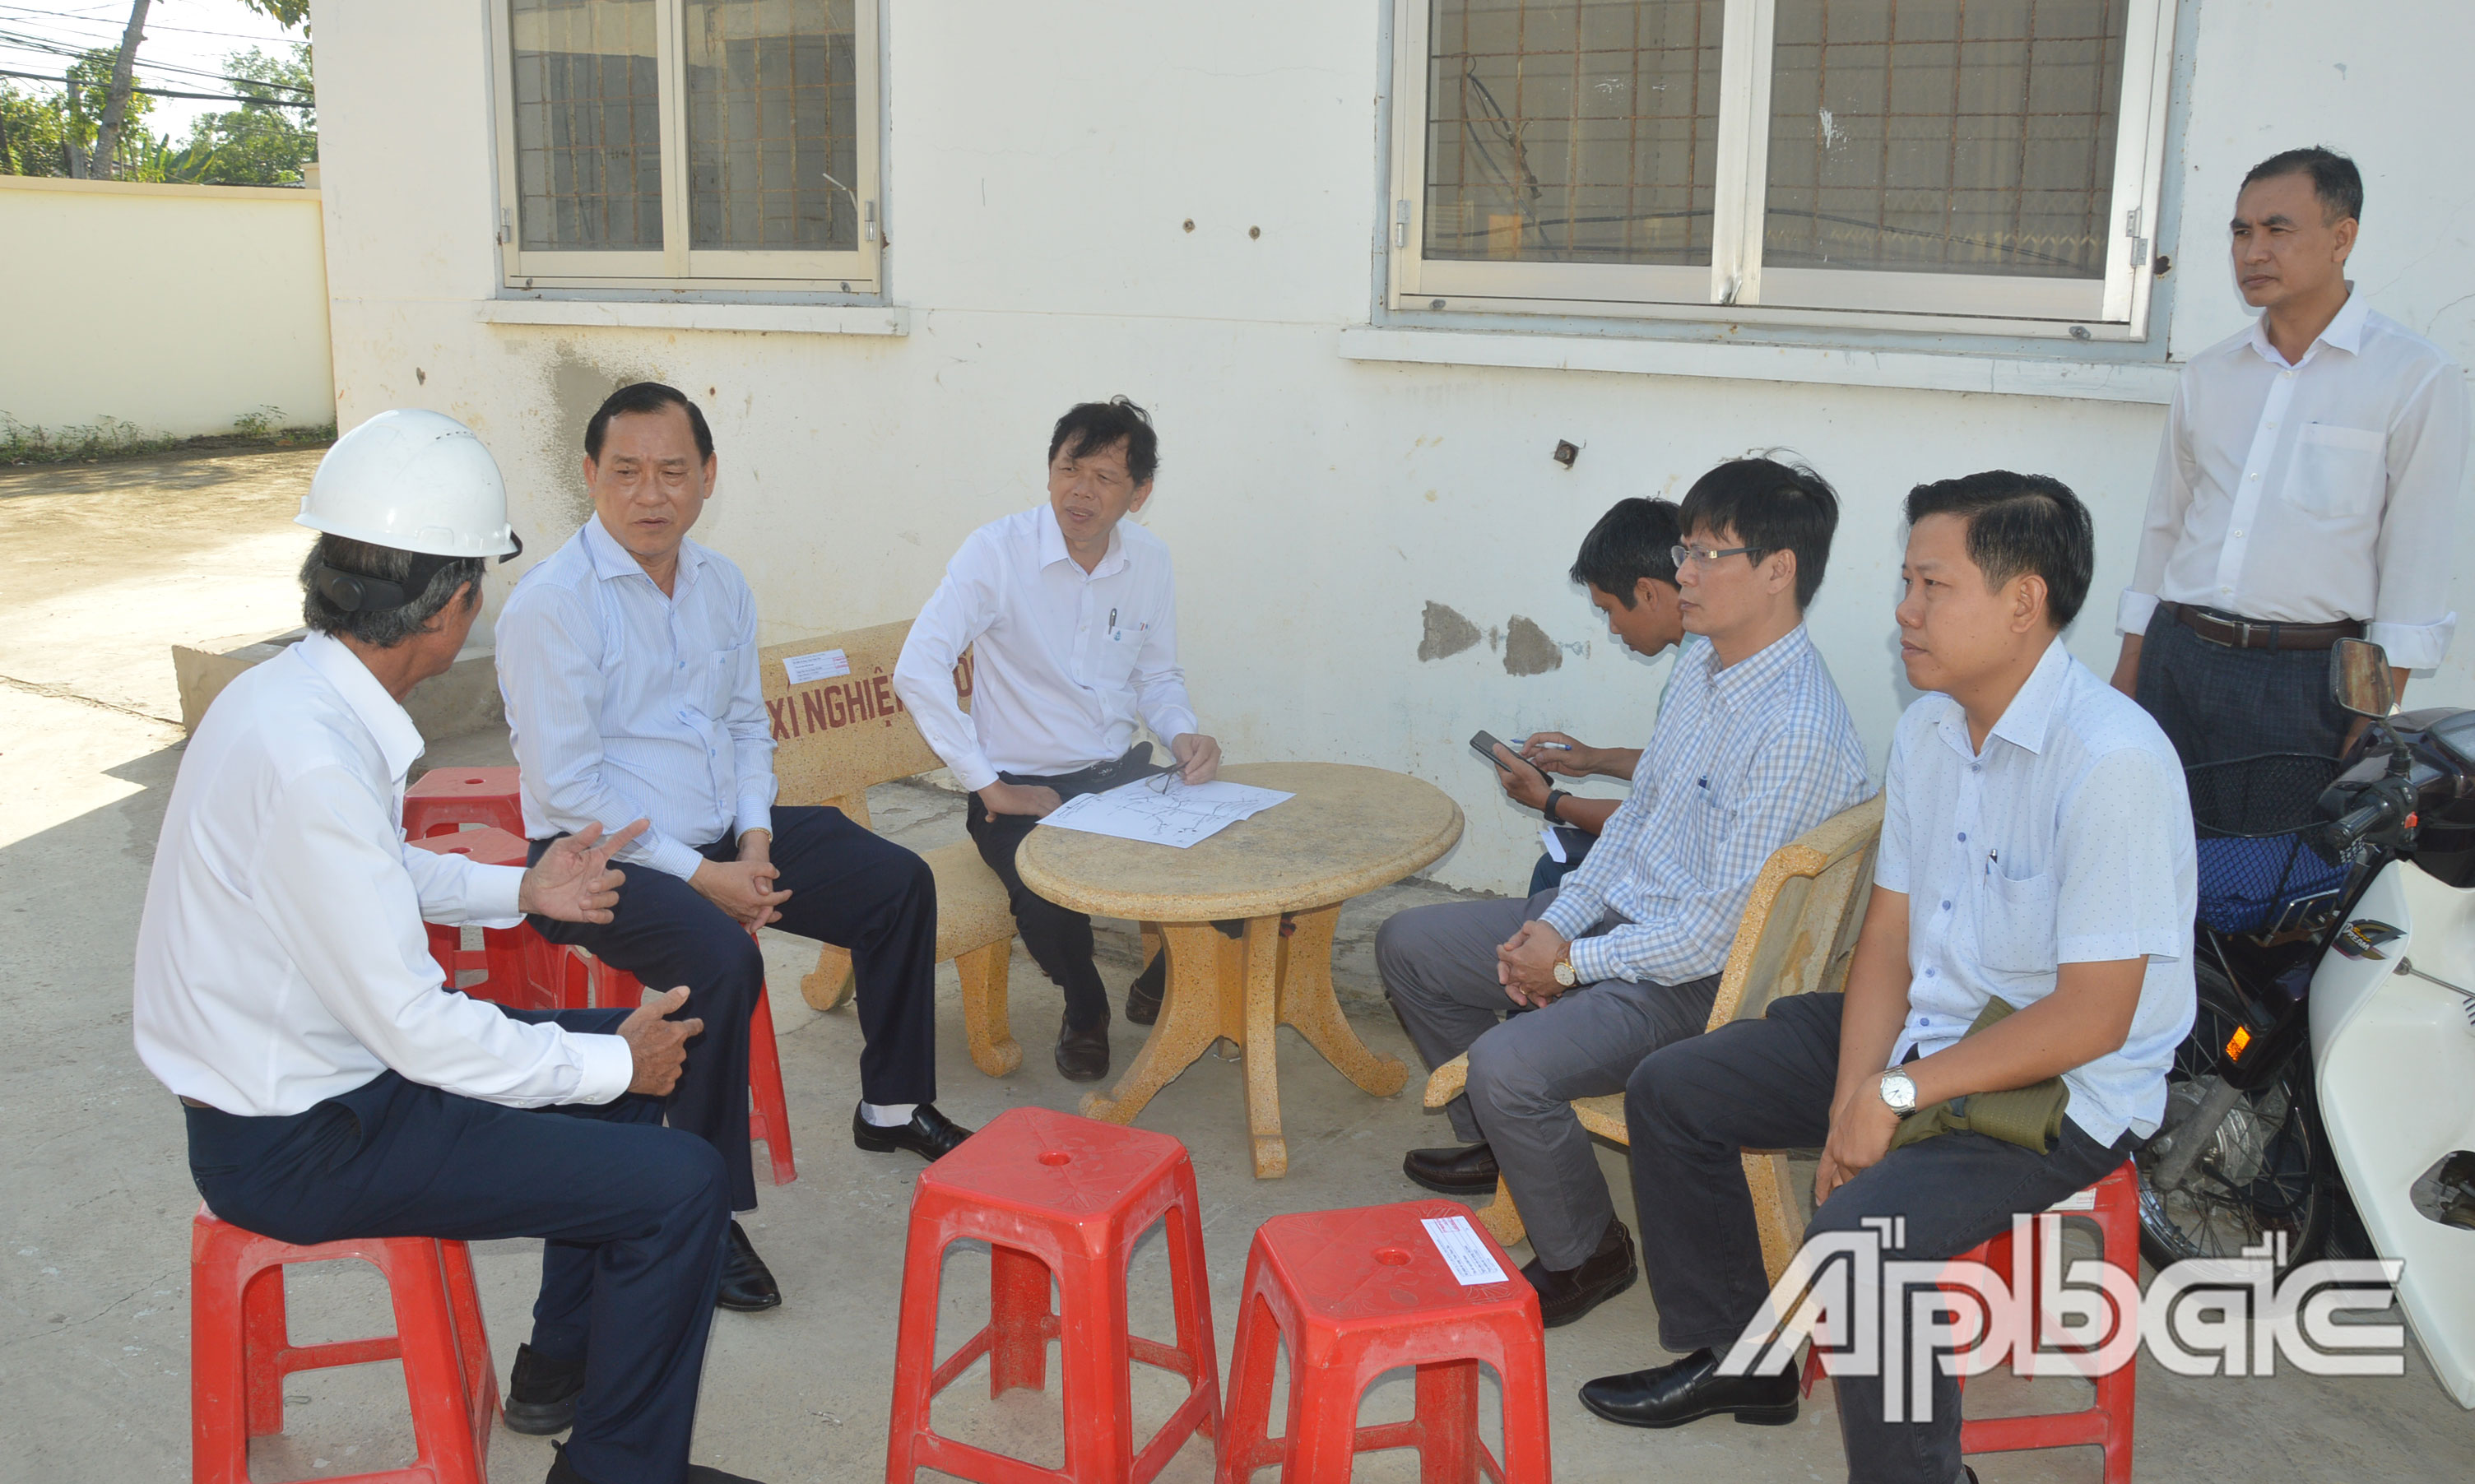 Đồng chí Nguyễn Văn Vĩnh kiểm tra tình hình cấp nước tại Trạm bơm tăng áp Gò Công.